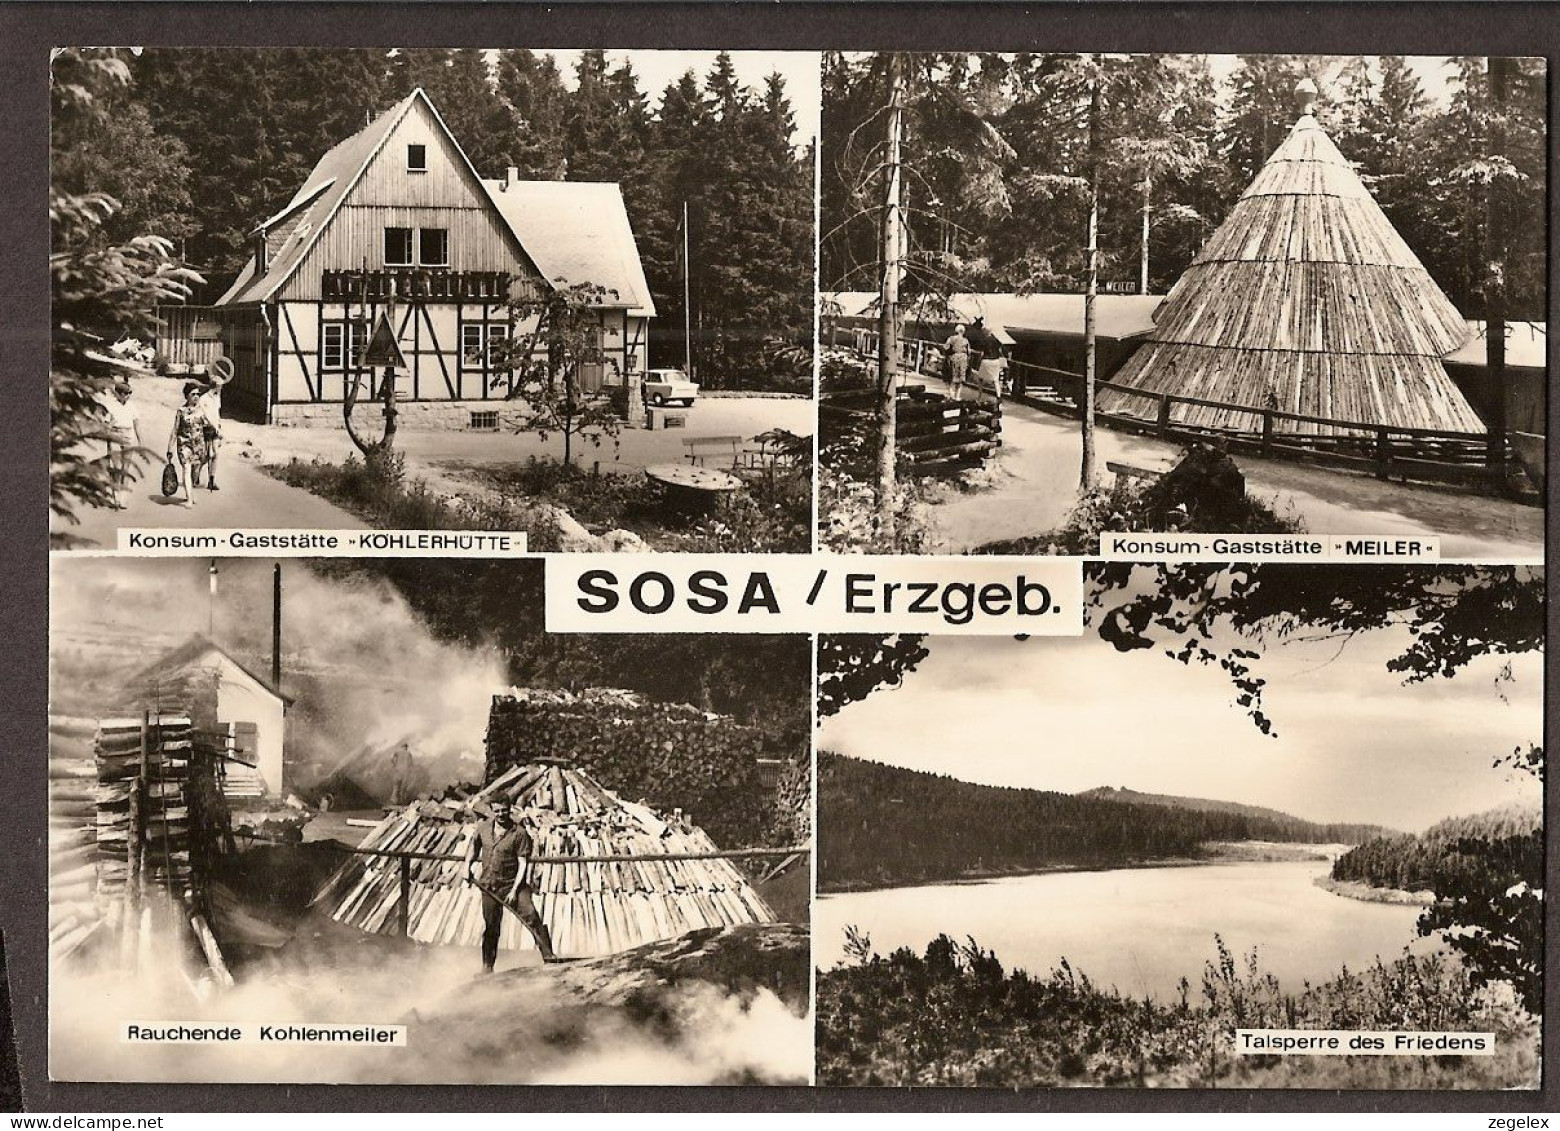 Sosa / Erzgebirge - Gaststätte 'Köhlerhütte In Konsum. Gaststätte 'Meiler' - Rauchende Kohlenmeiler - Sosa